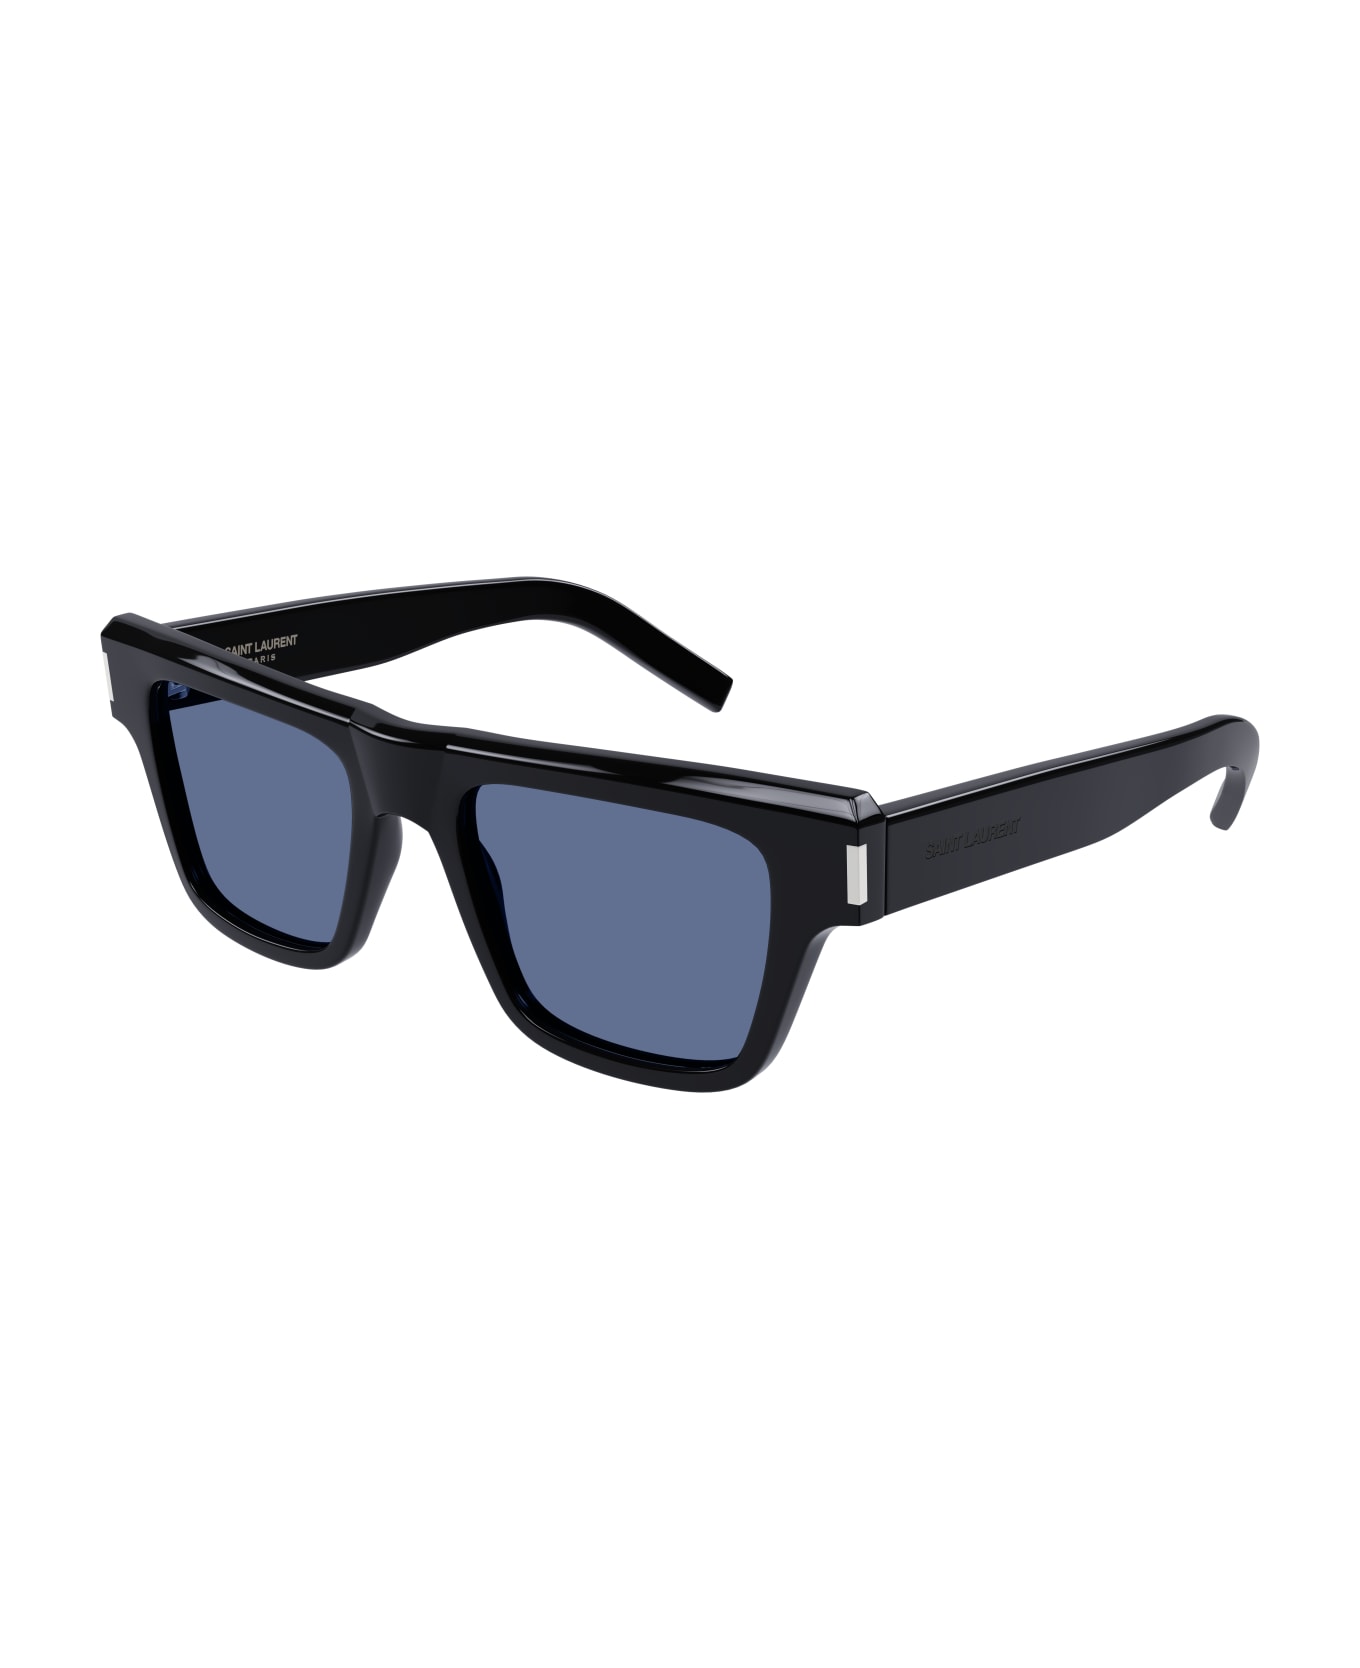 Saint Laurent Eyewear SL 469 Sunglasses - Black Black Blue サングラス